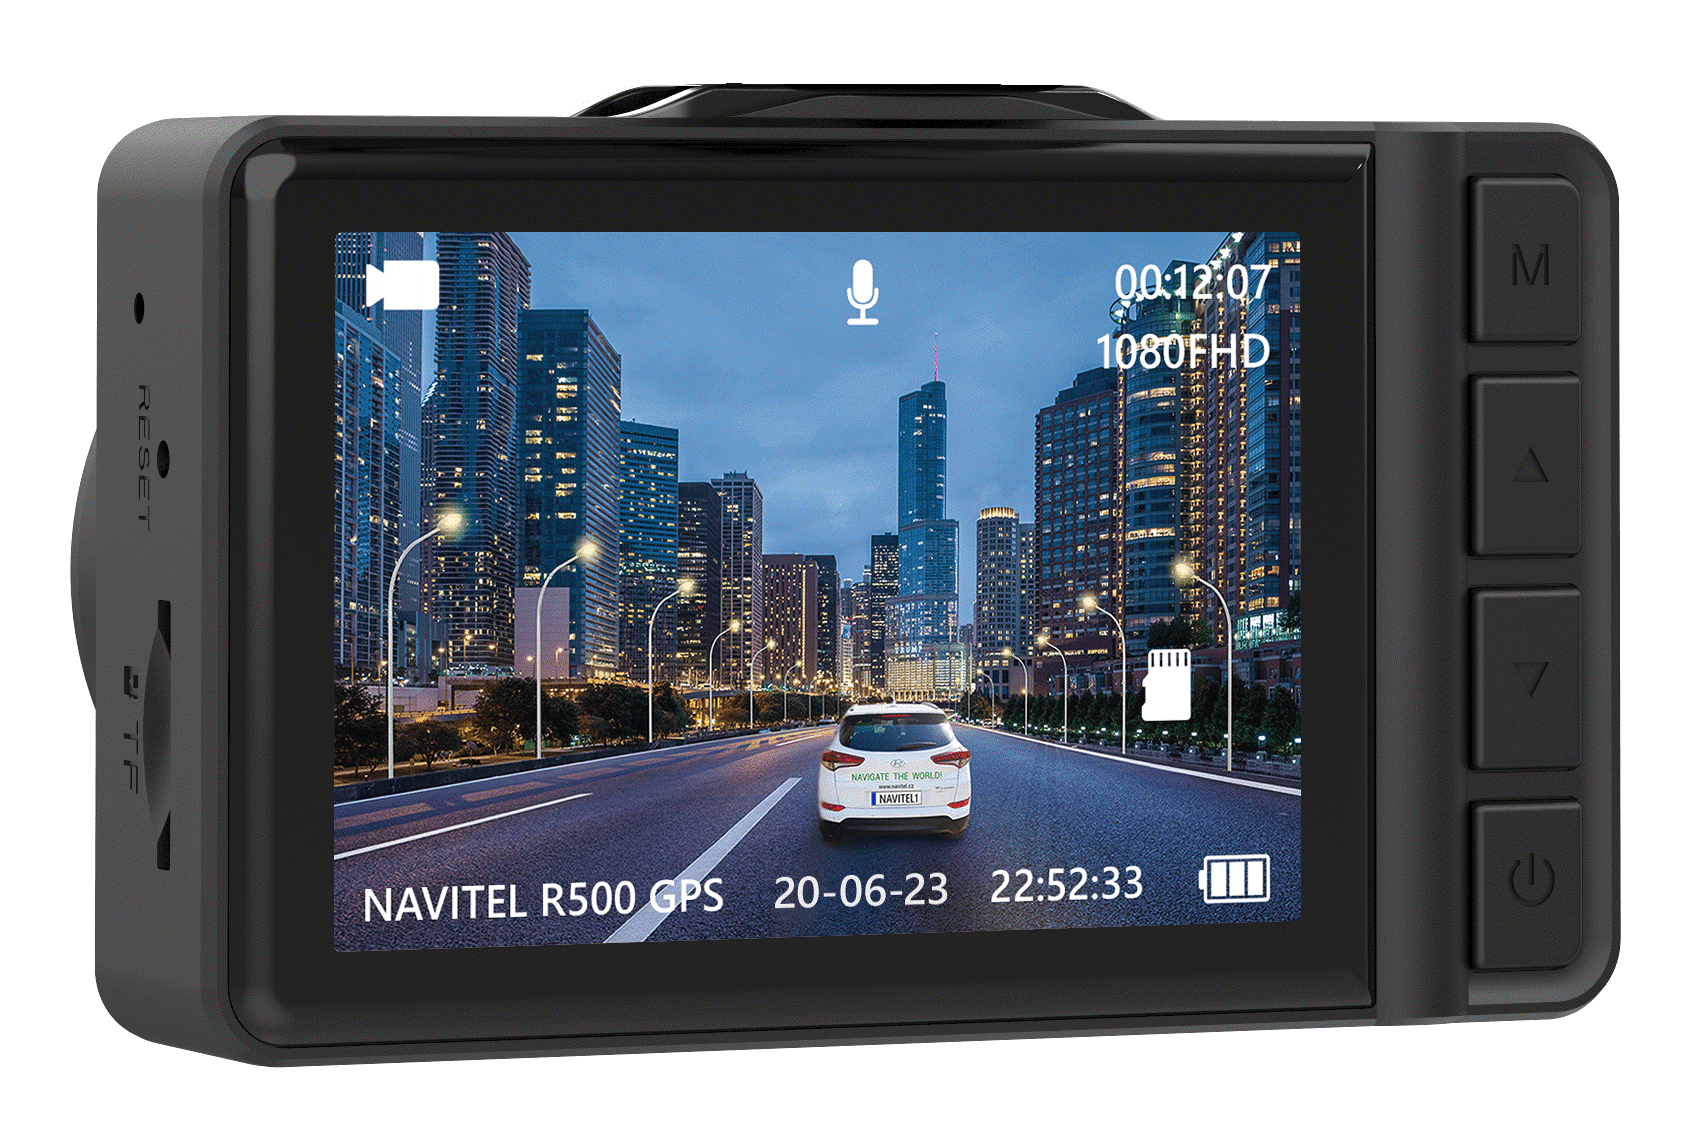 Rejestrator jazdy Navitel R500 GPS – Twoja polisa bezpieczeństwa w każdej podróży